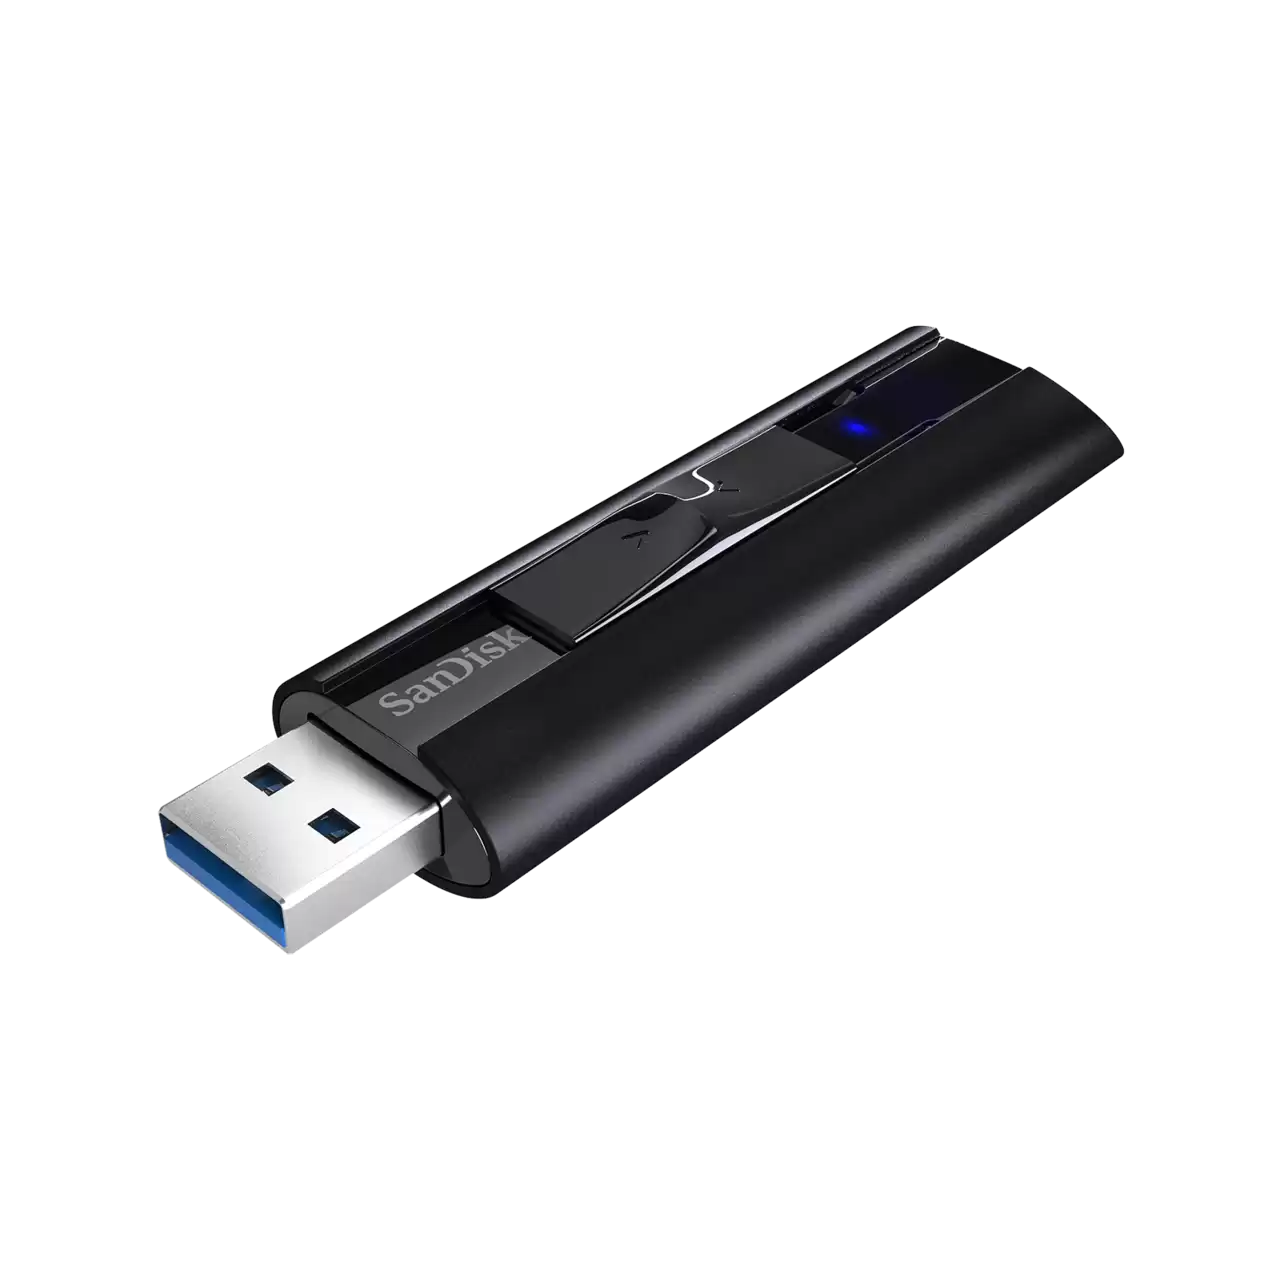 Sandisk USB 3.1 Cruzer 880 cz880 Extreme Pro 128GB/256GB Flash Drive (SDCZ880-128G-G46/SDCZ880-256G-G46)